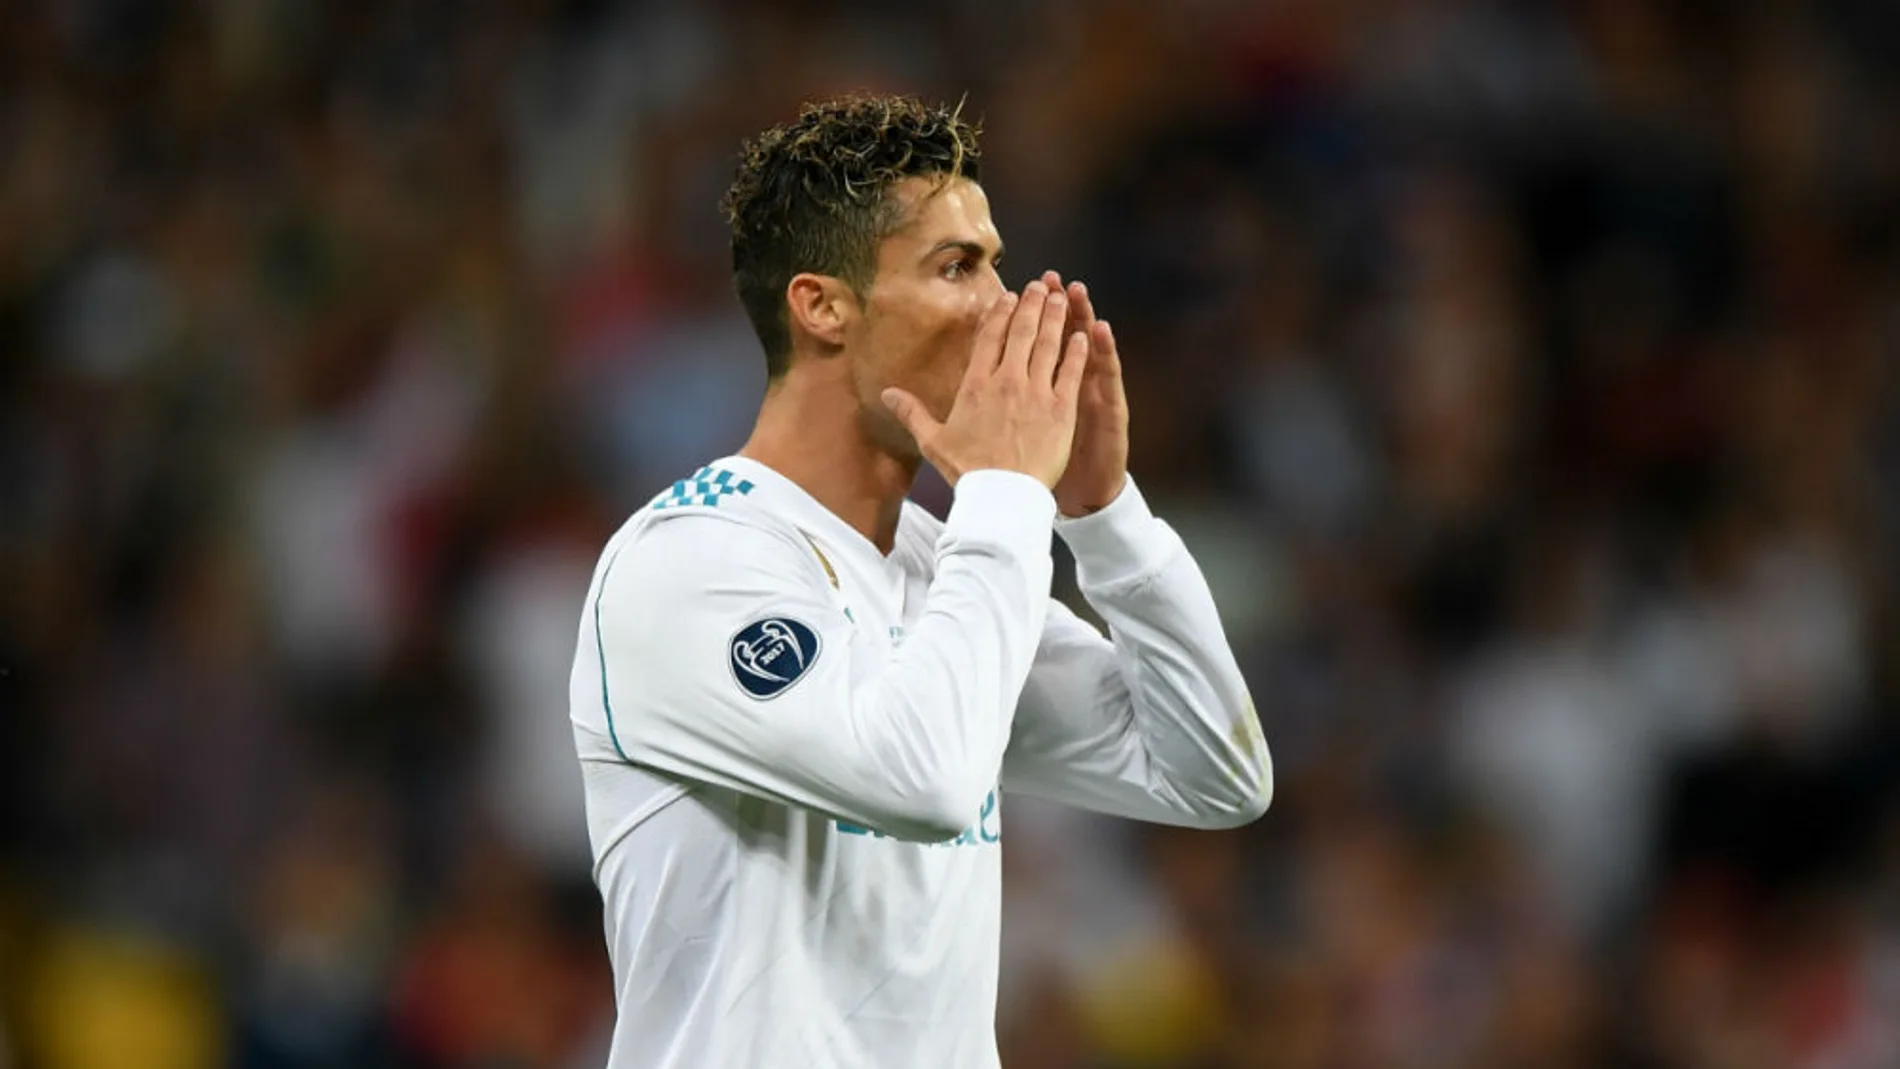 laSexta Deportes (03-07-18) Exclusiva 'Jugones': Cristiano Ronaldo abandonará el Real Madrid y fichará por la Juventus por 100 millones de euros